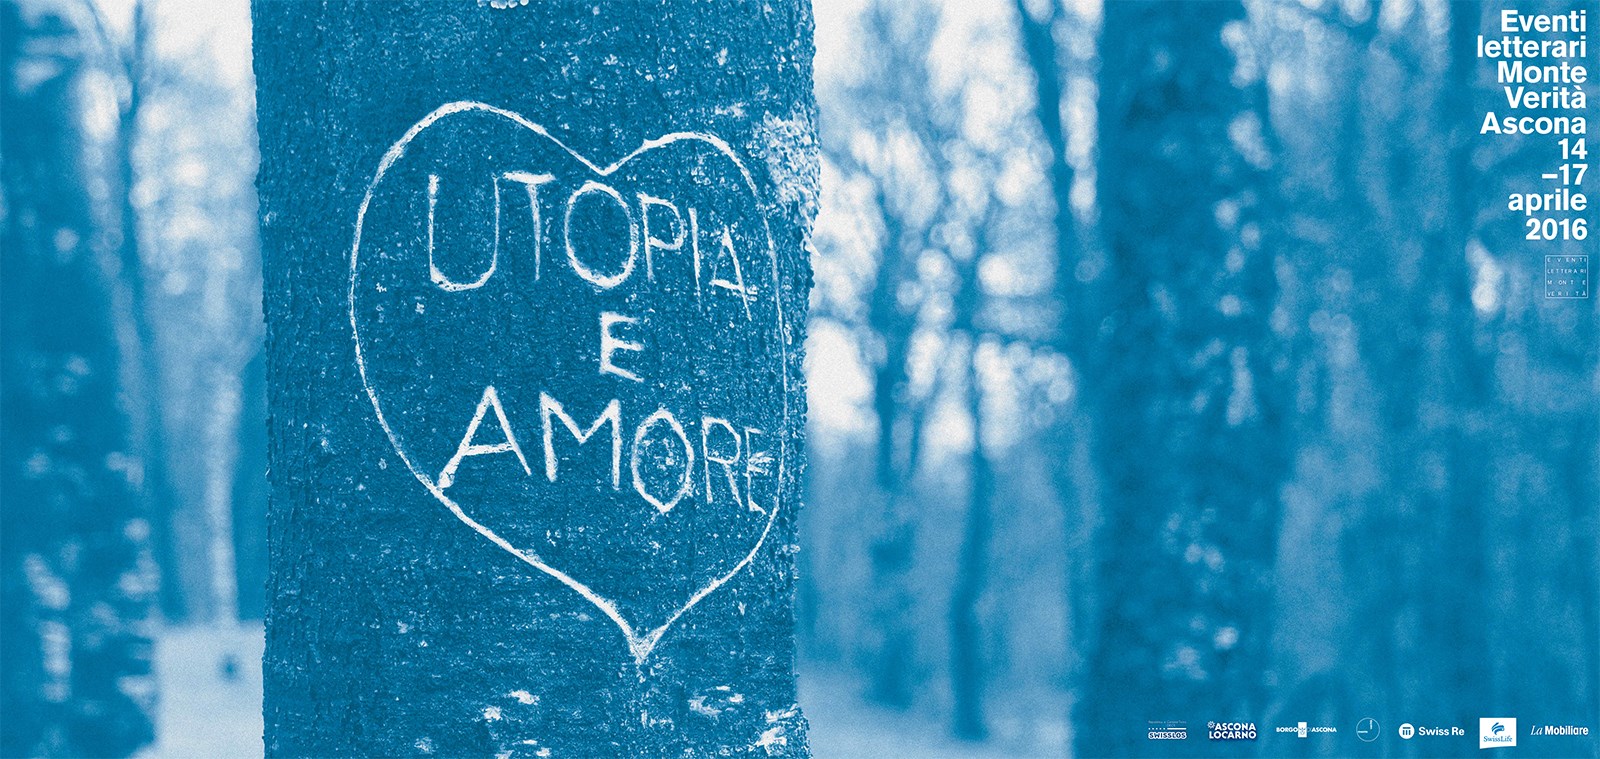 Utopia e amore